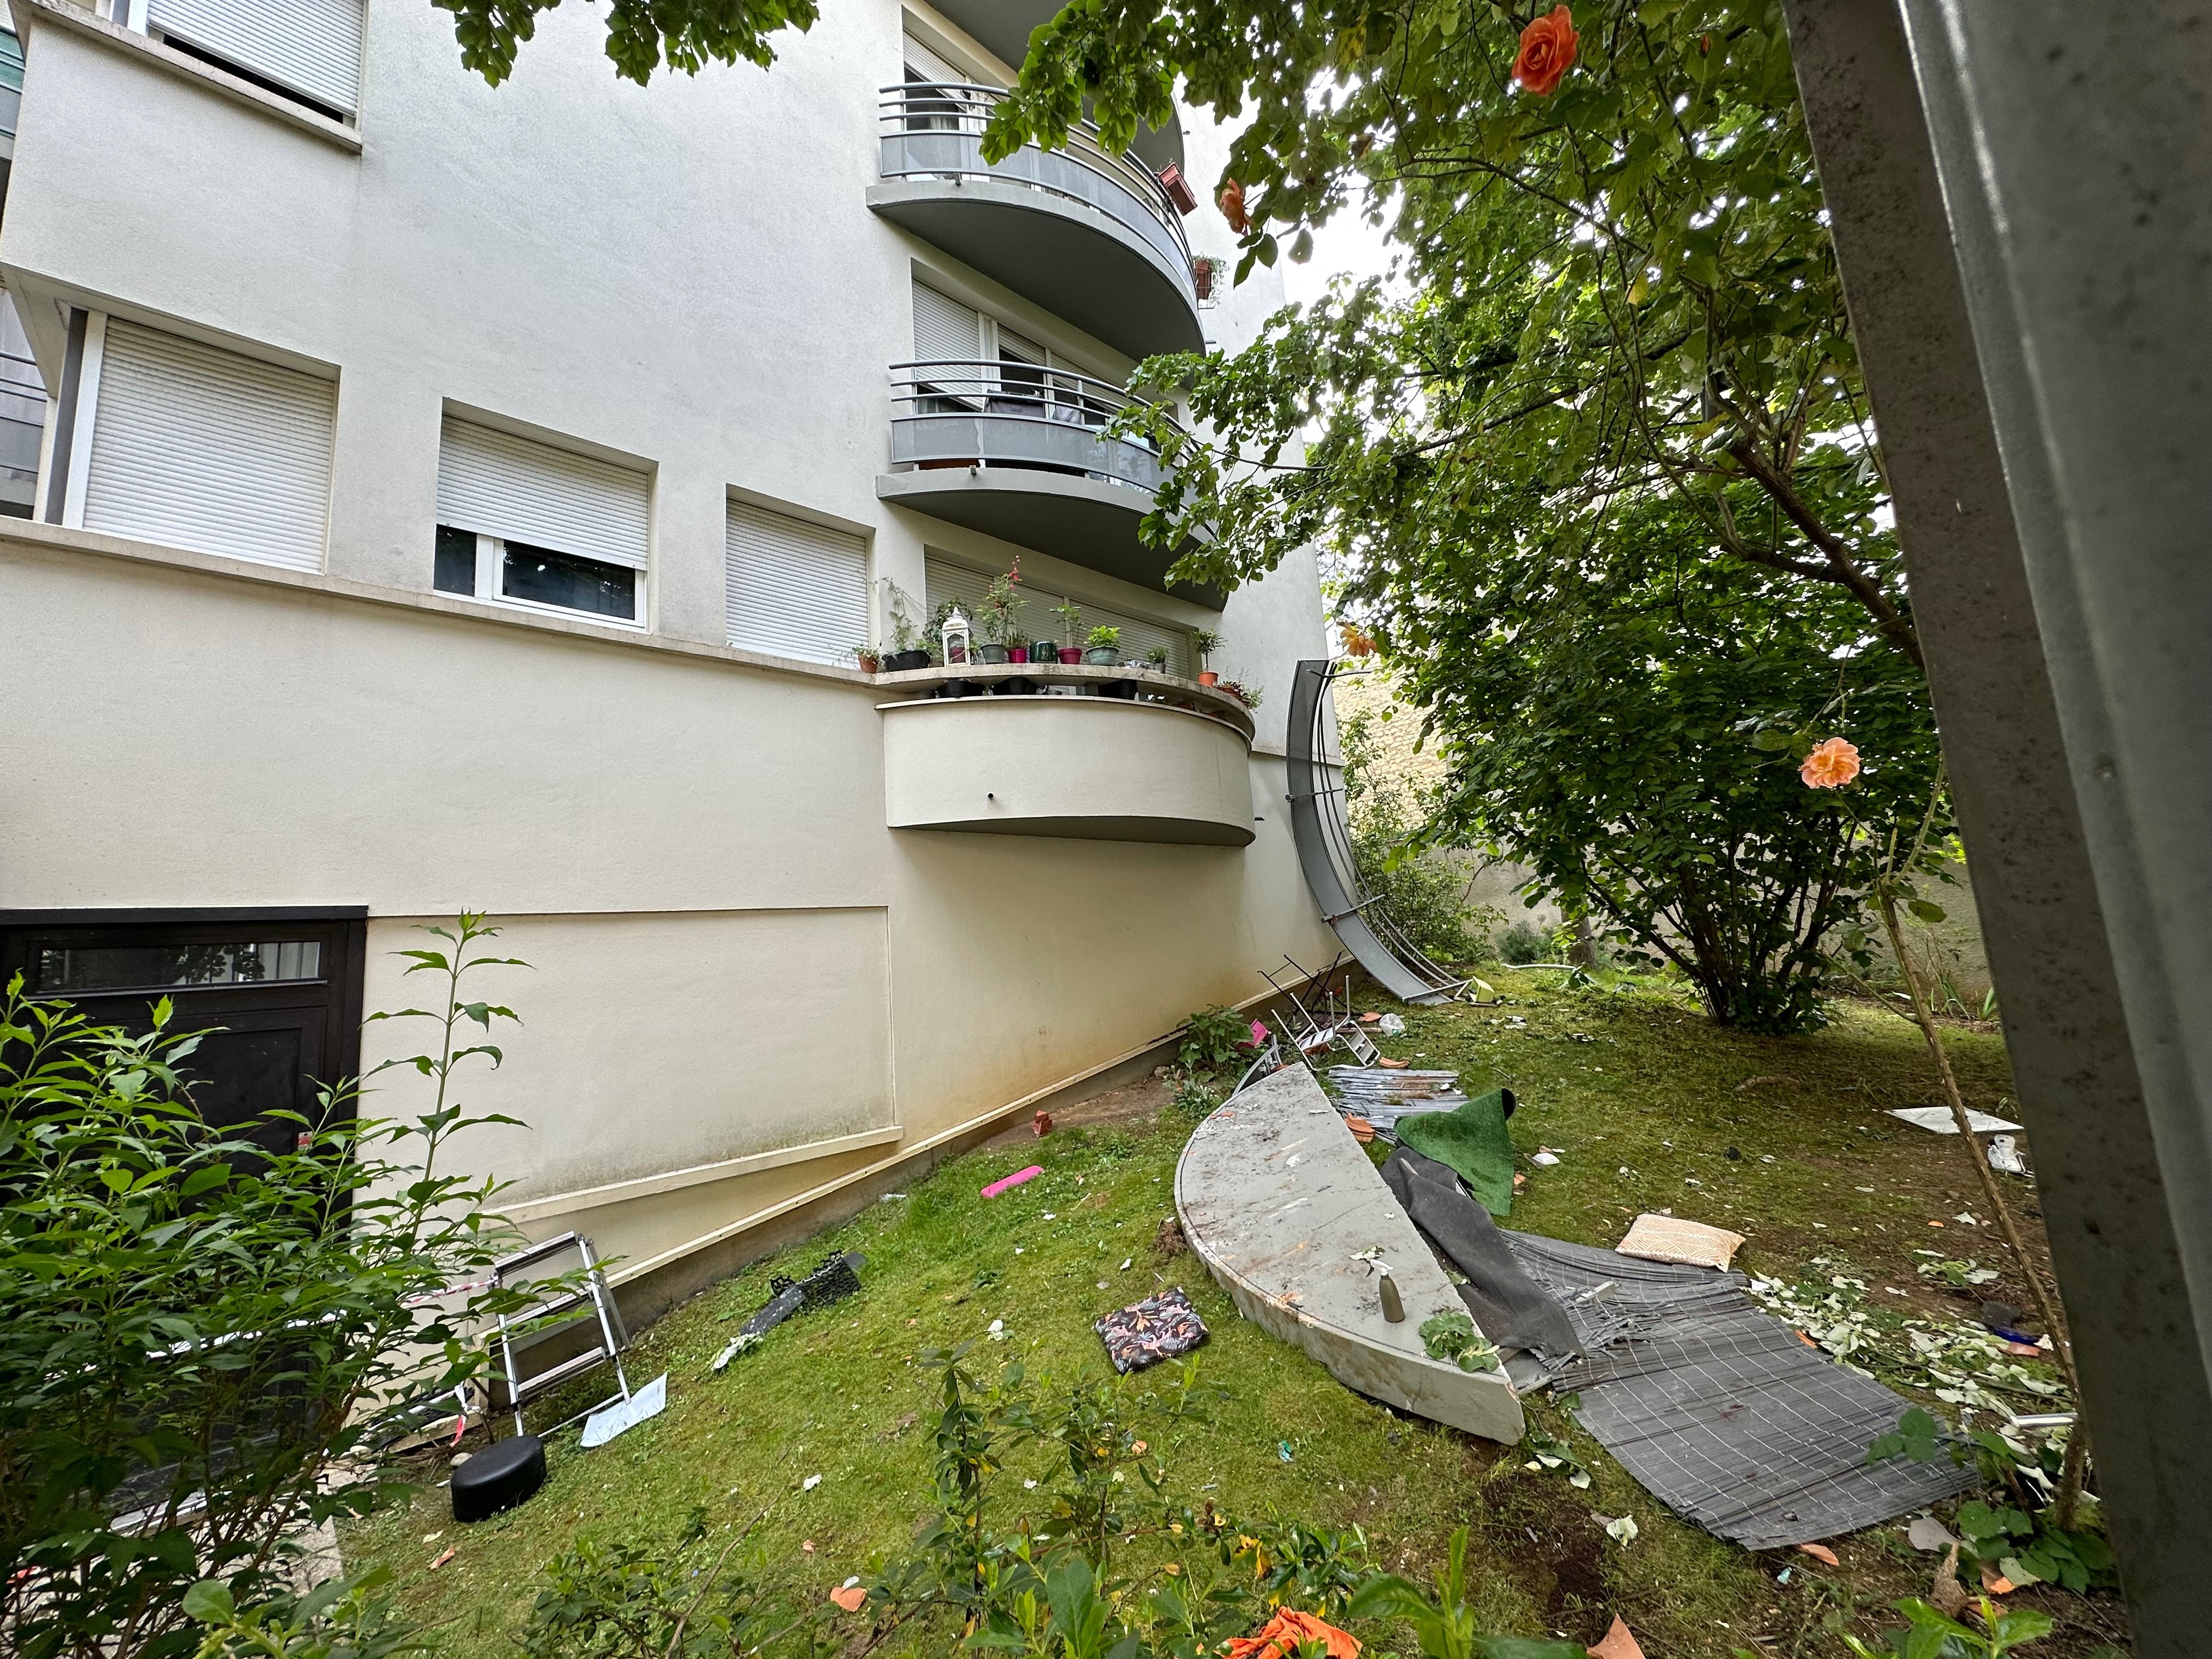 Paris : Un paon atterrit sur un balcon au 6e étage